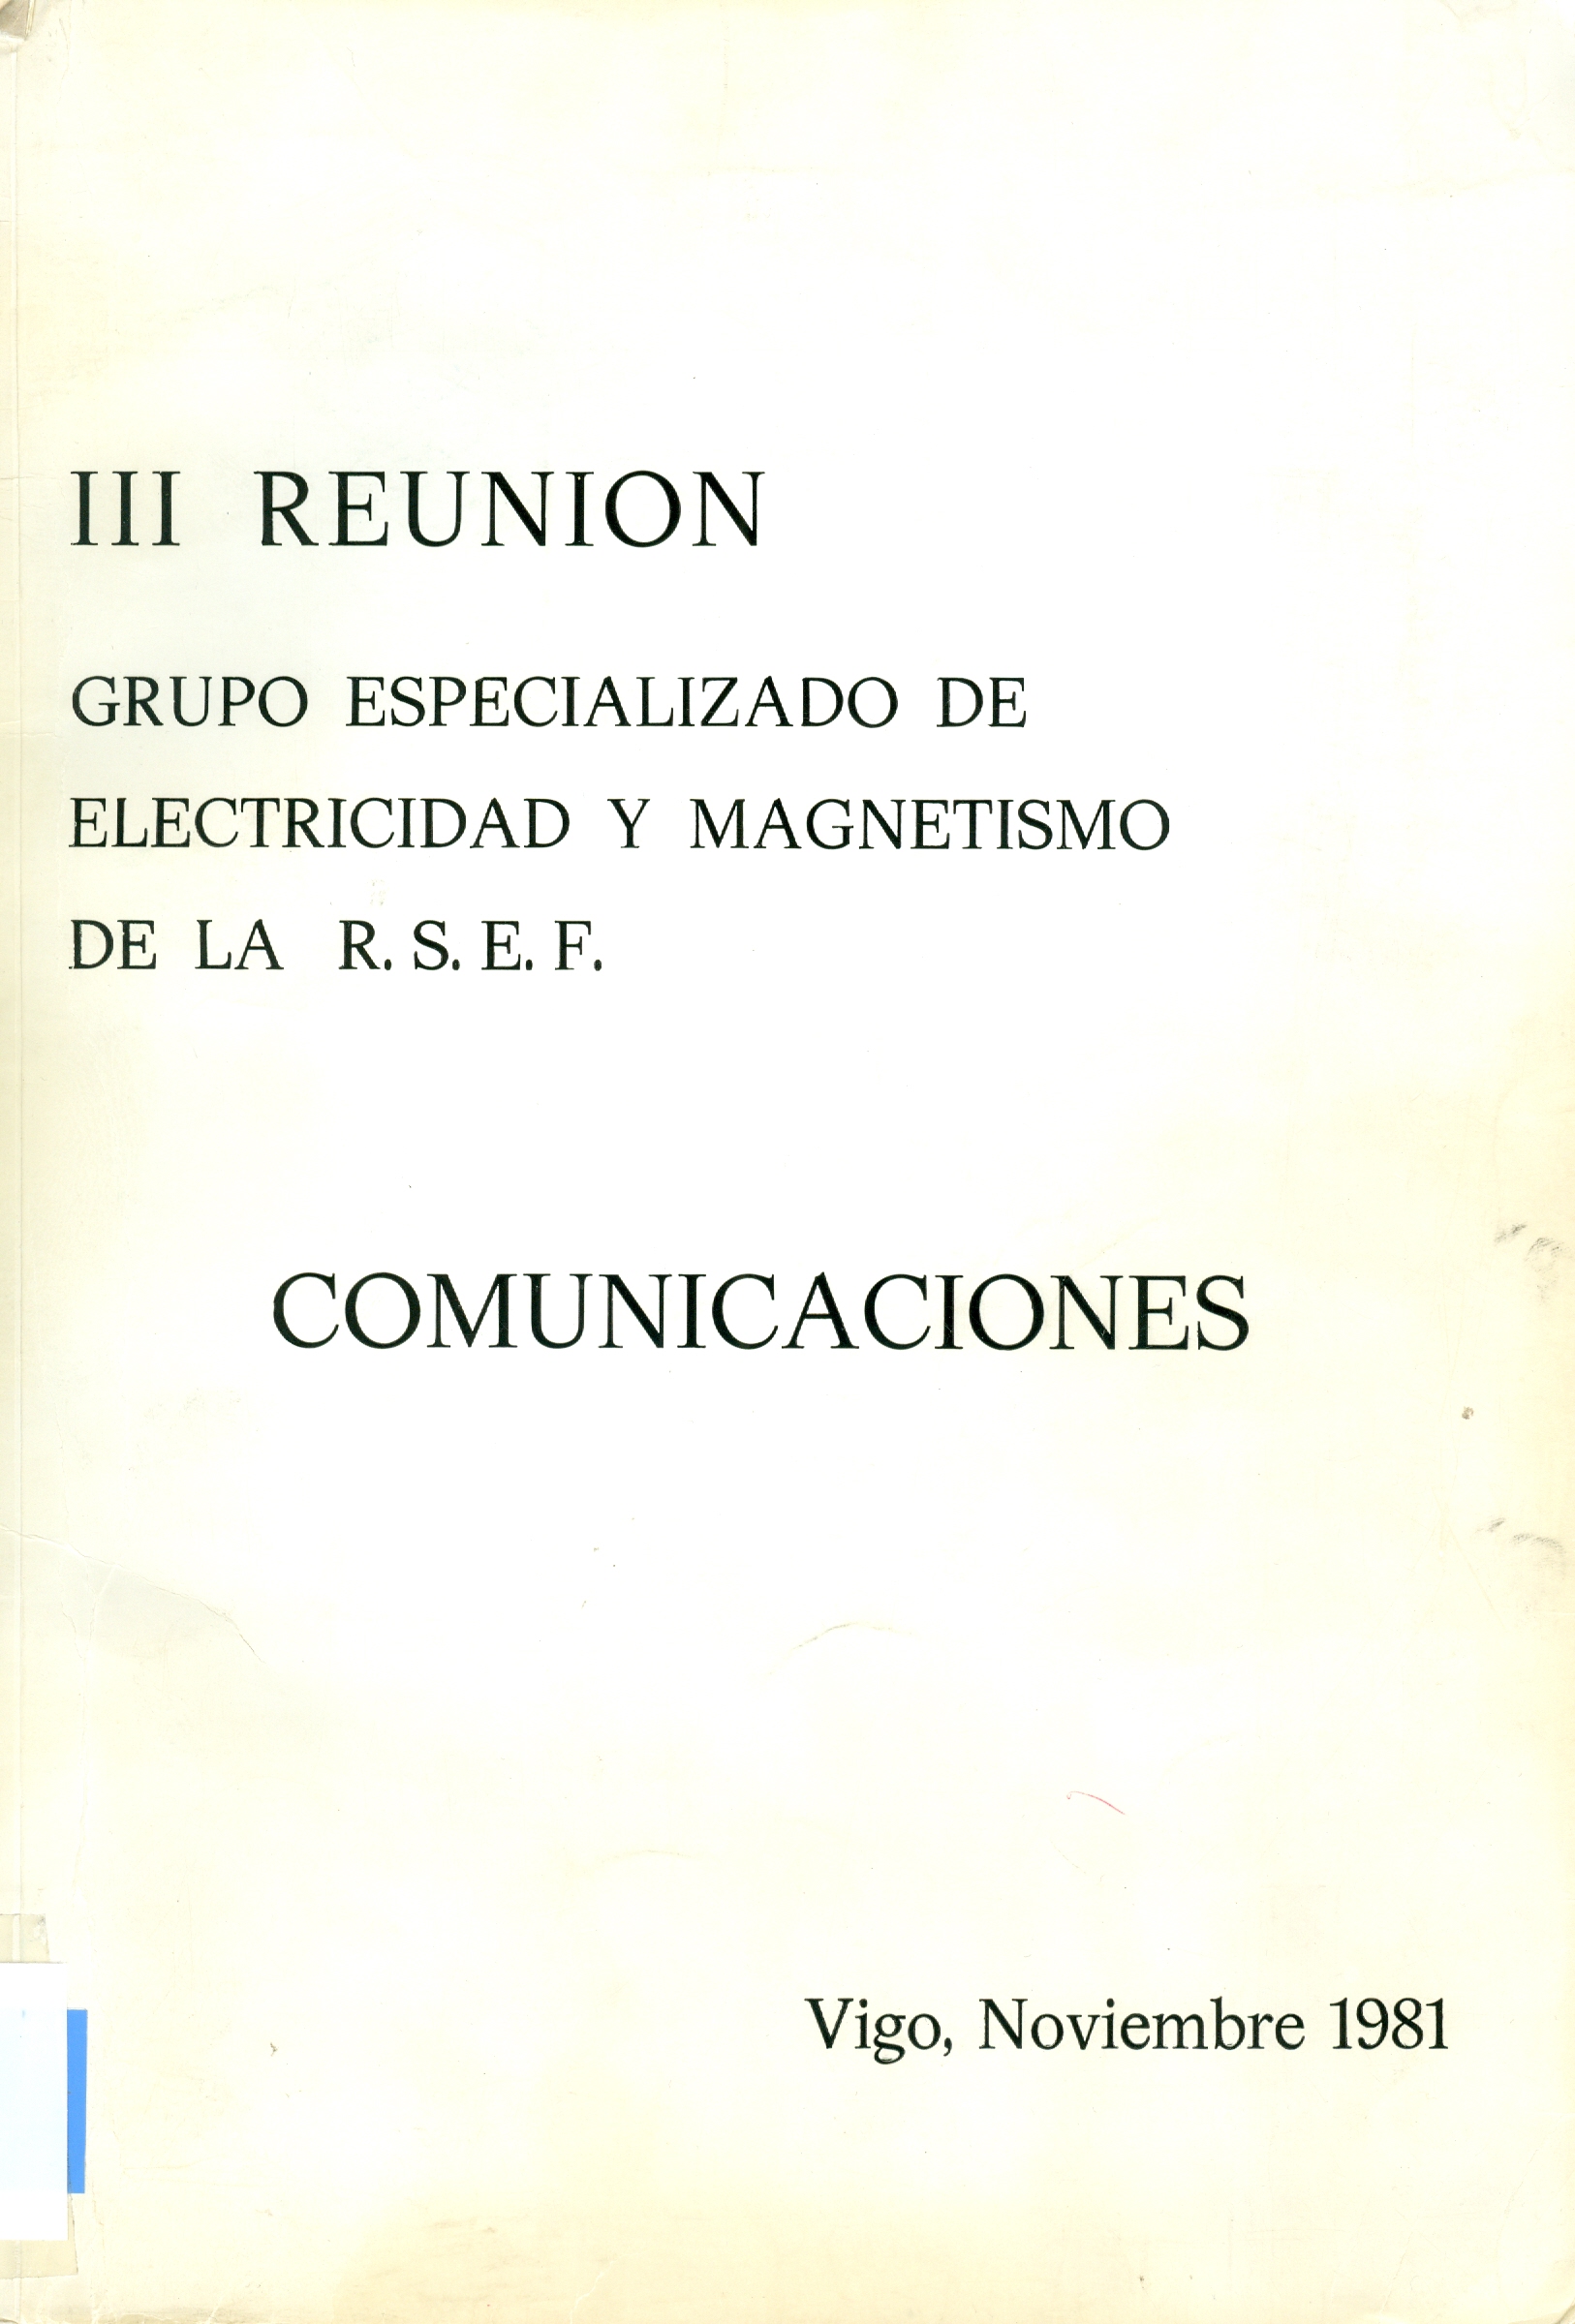 Imagen de portada del libro III Reunión Grupo Especializado de Electricidad y Magnetismo de la RSEF